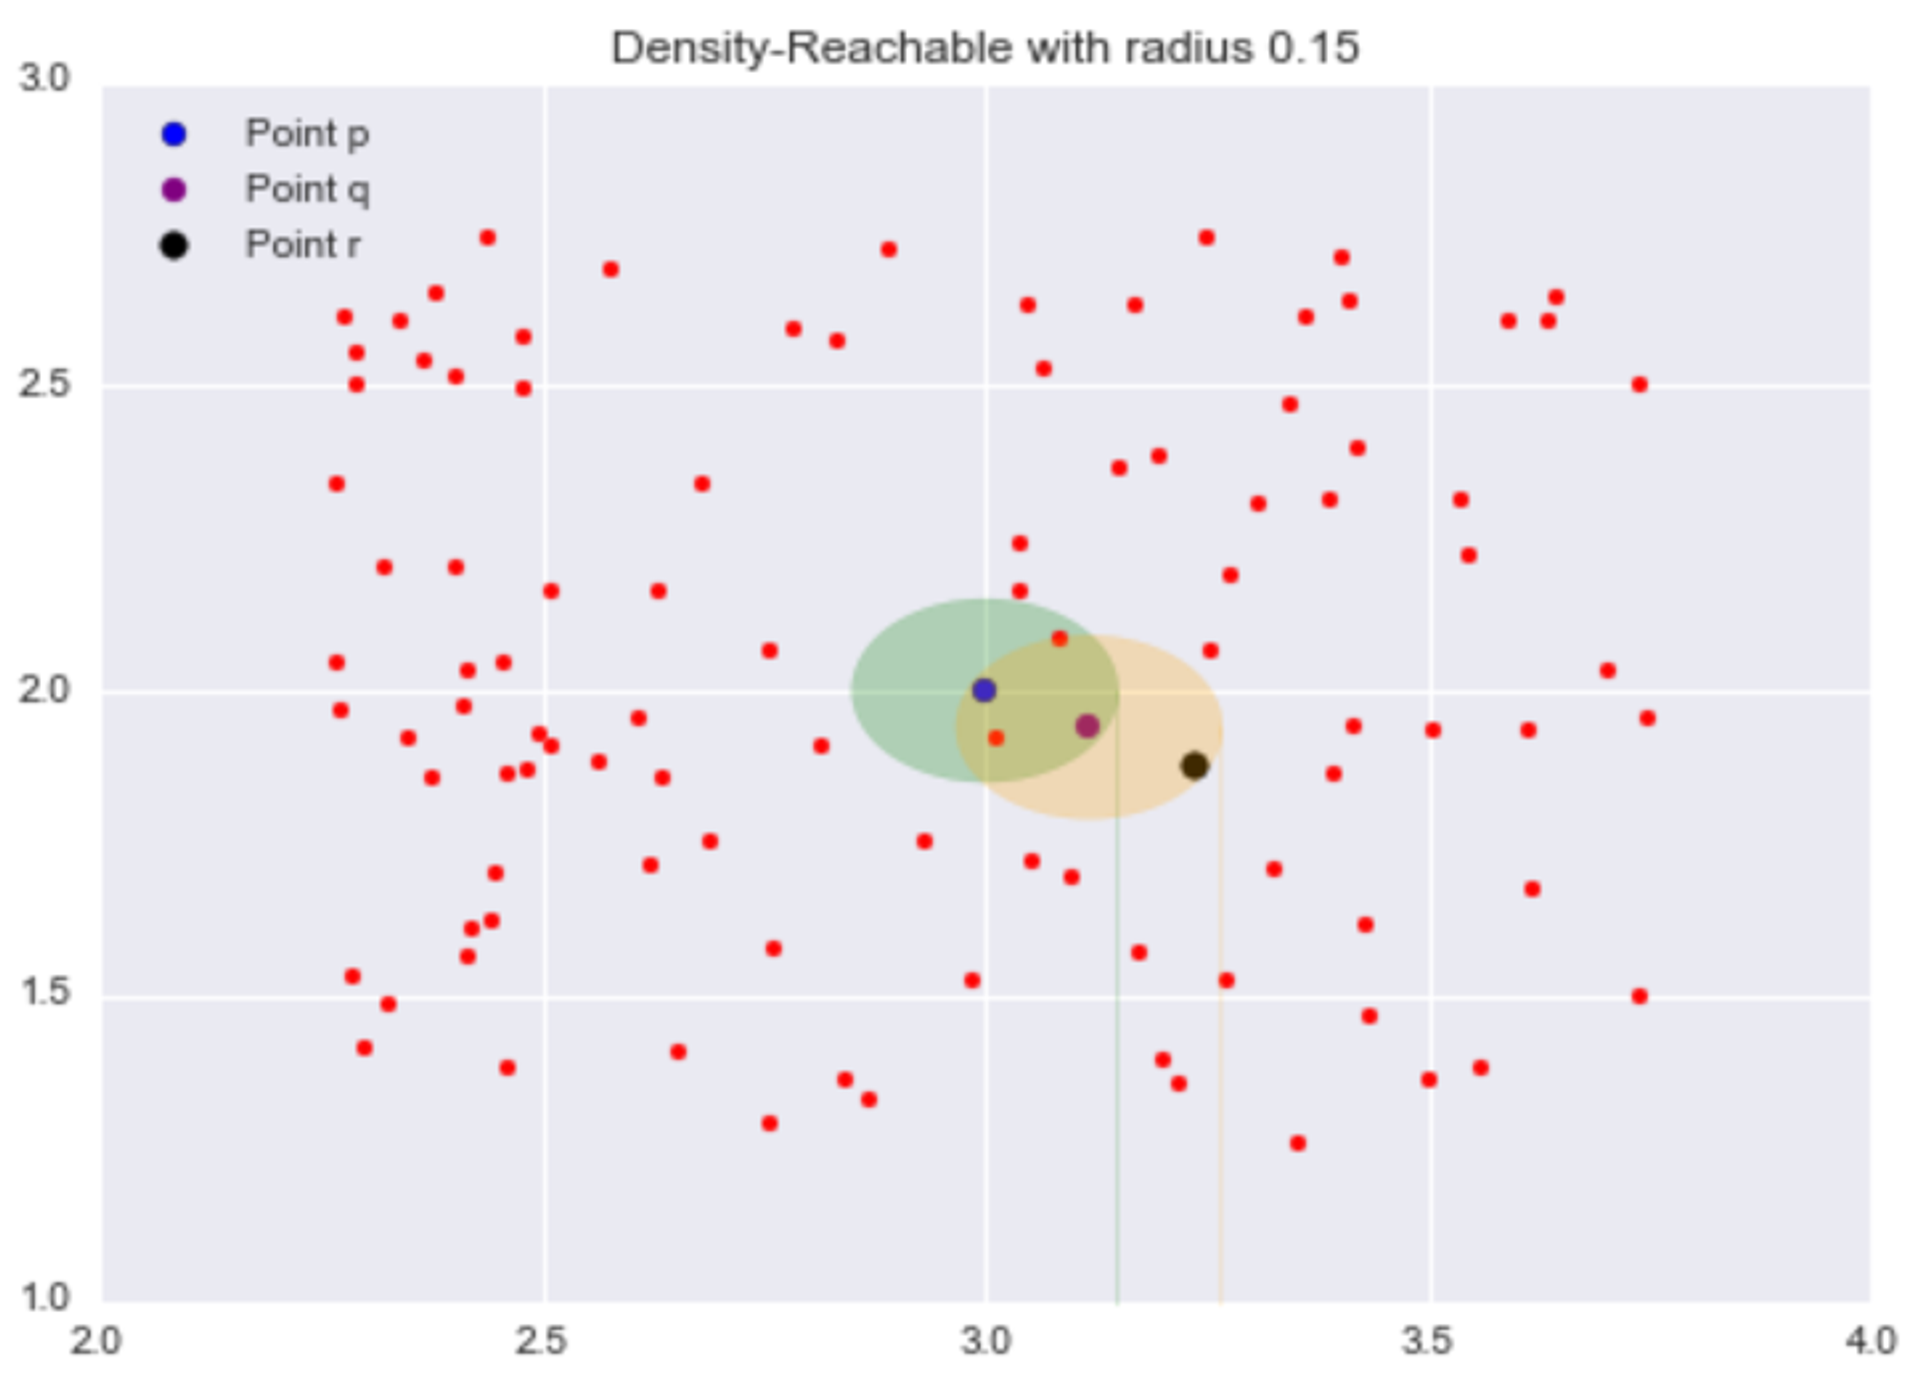 Density-Reachable with radius 0.15